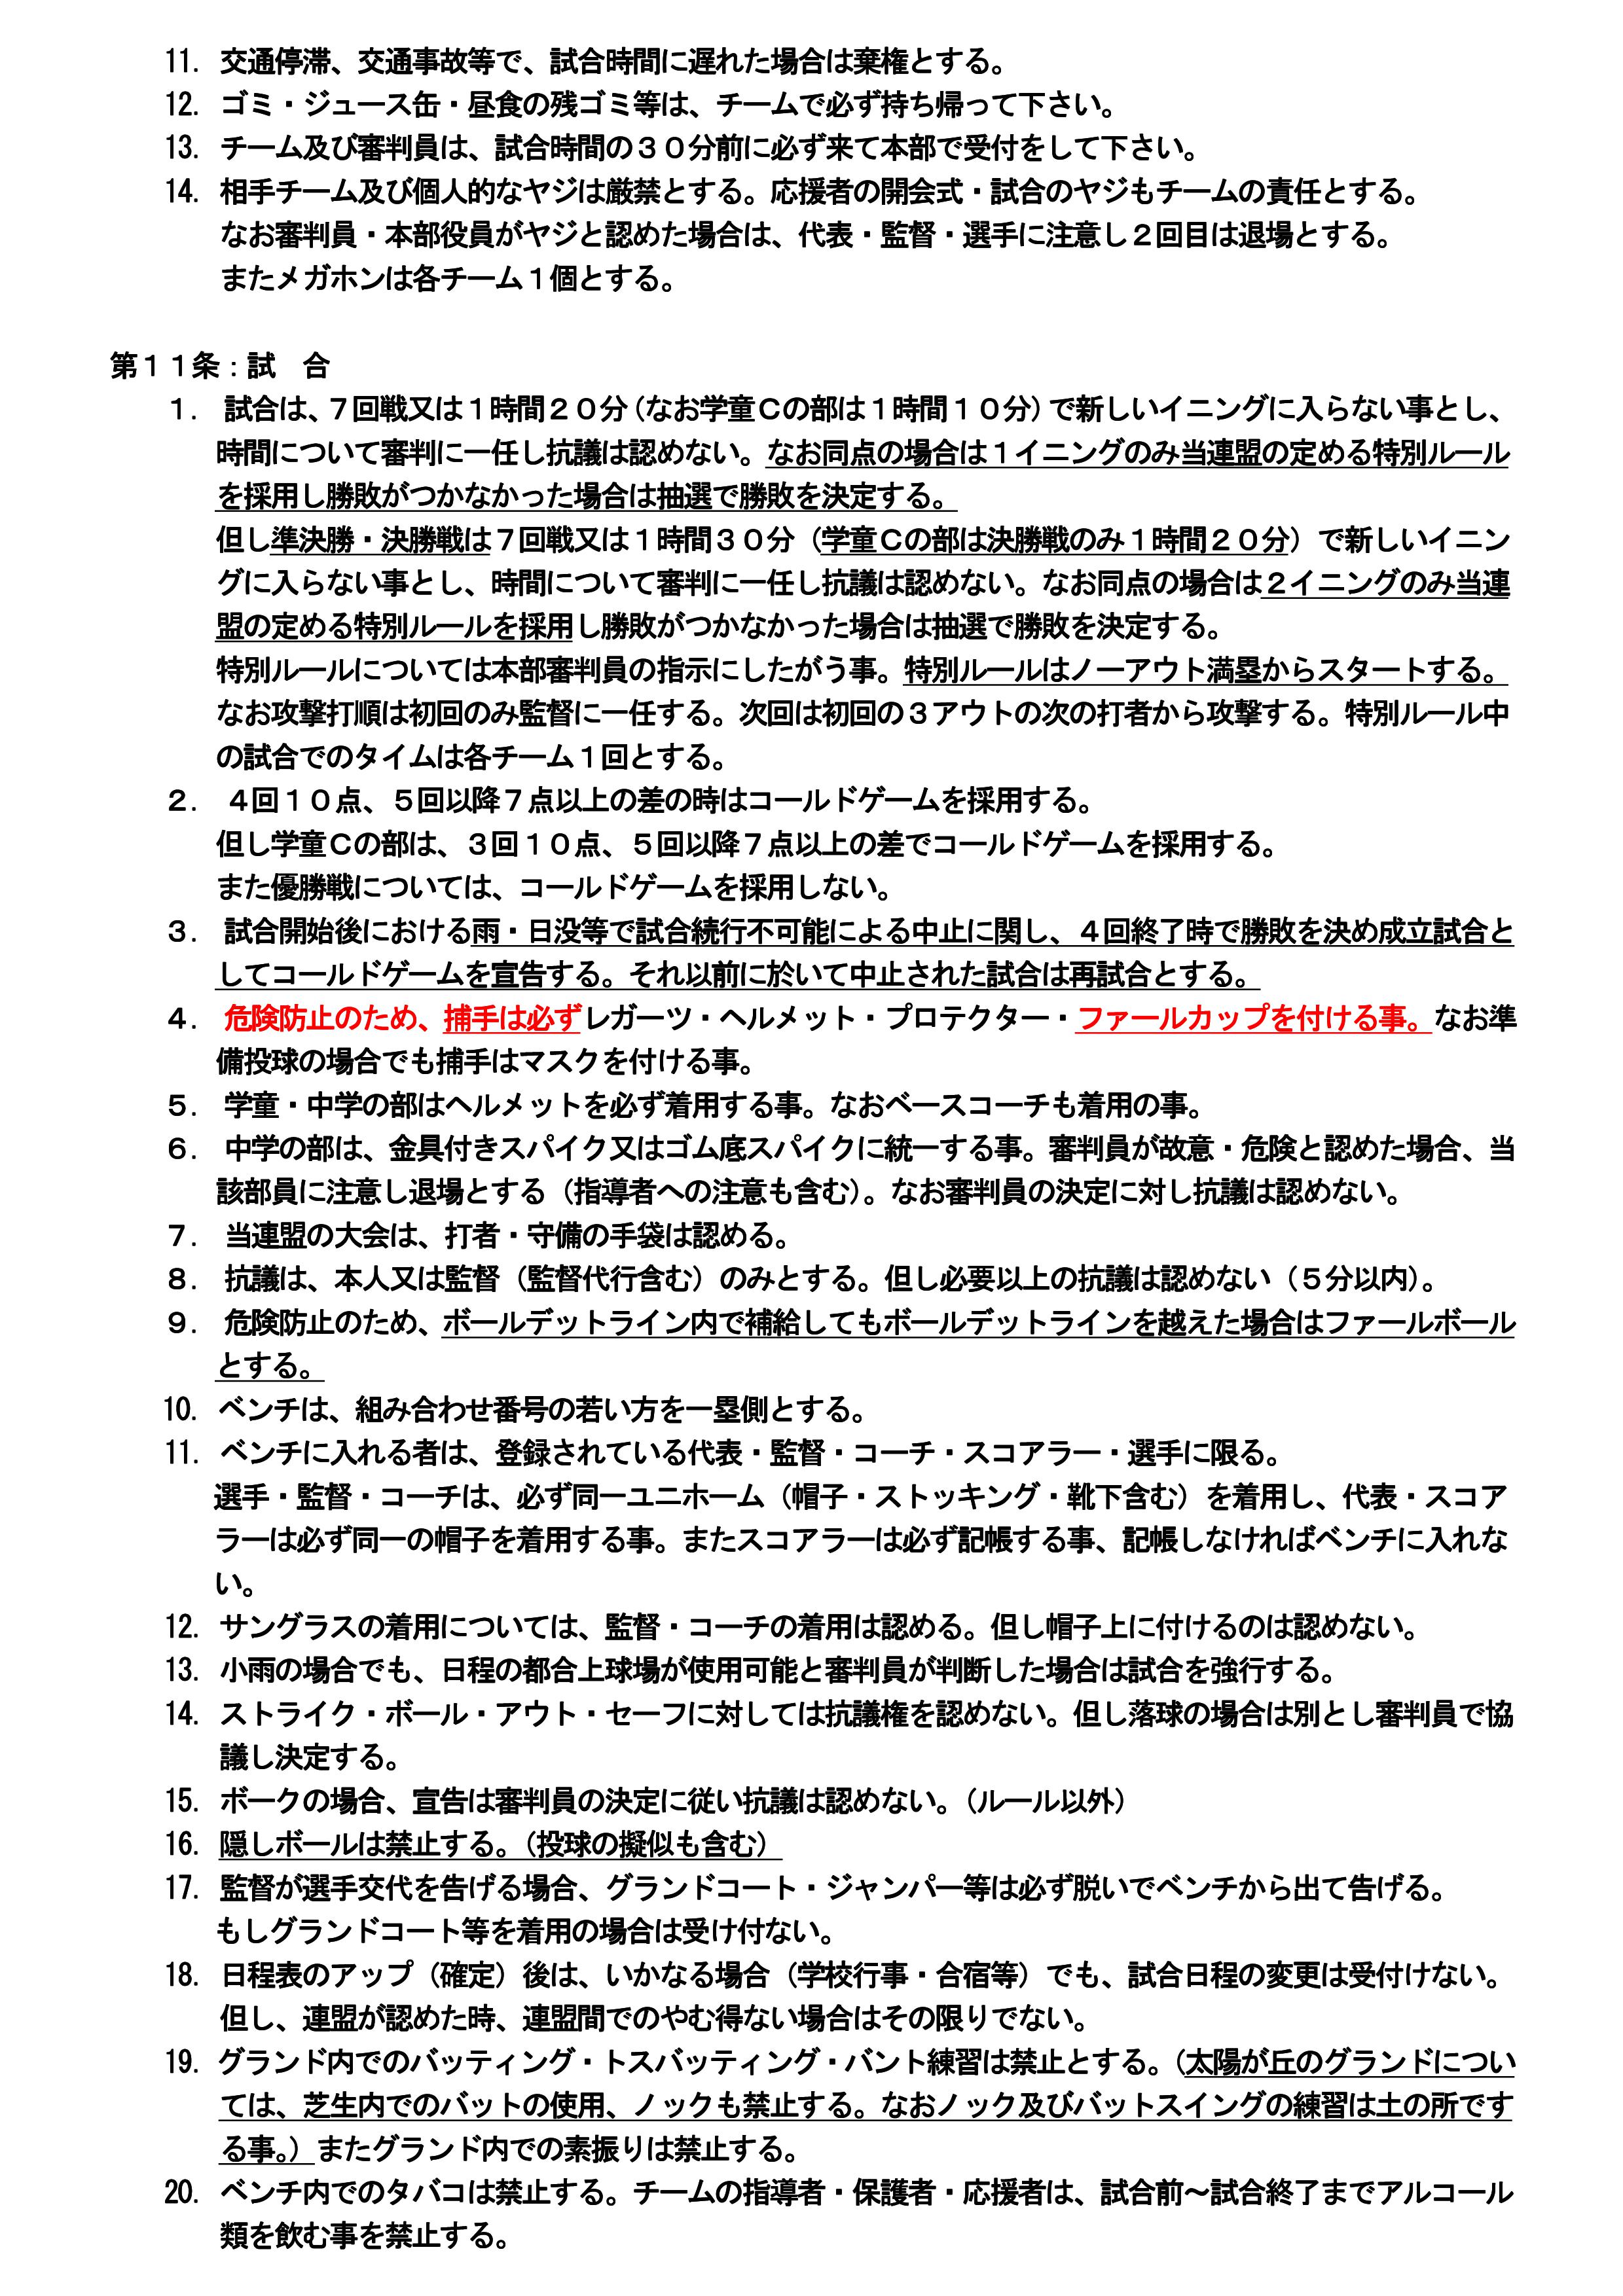 全京都少年野球連盟規約　2020.01.01改訂(案)-03.jpg